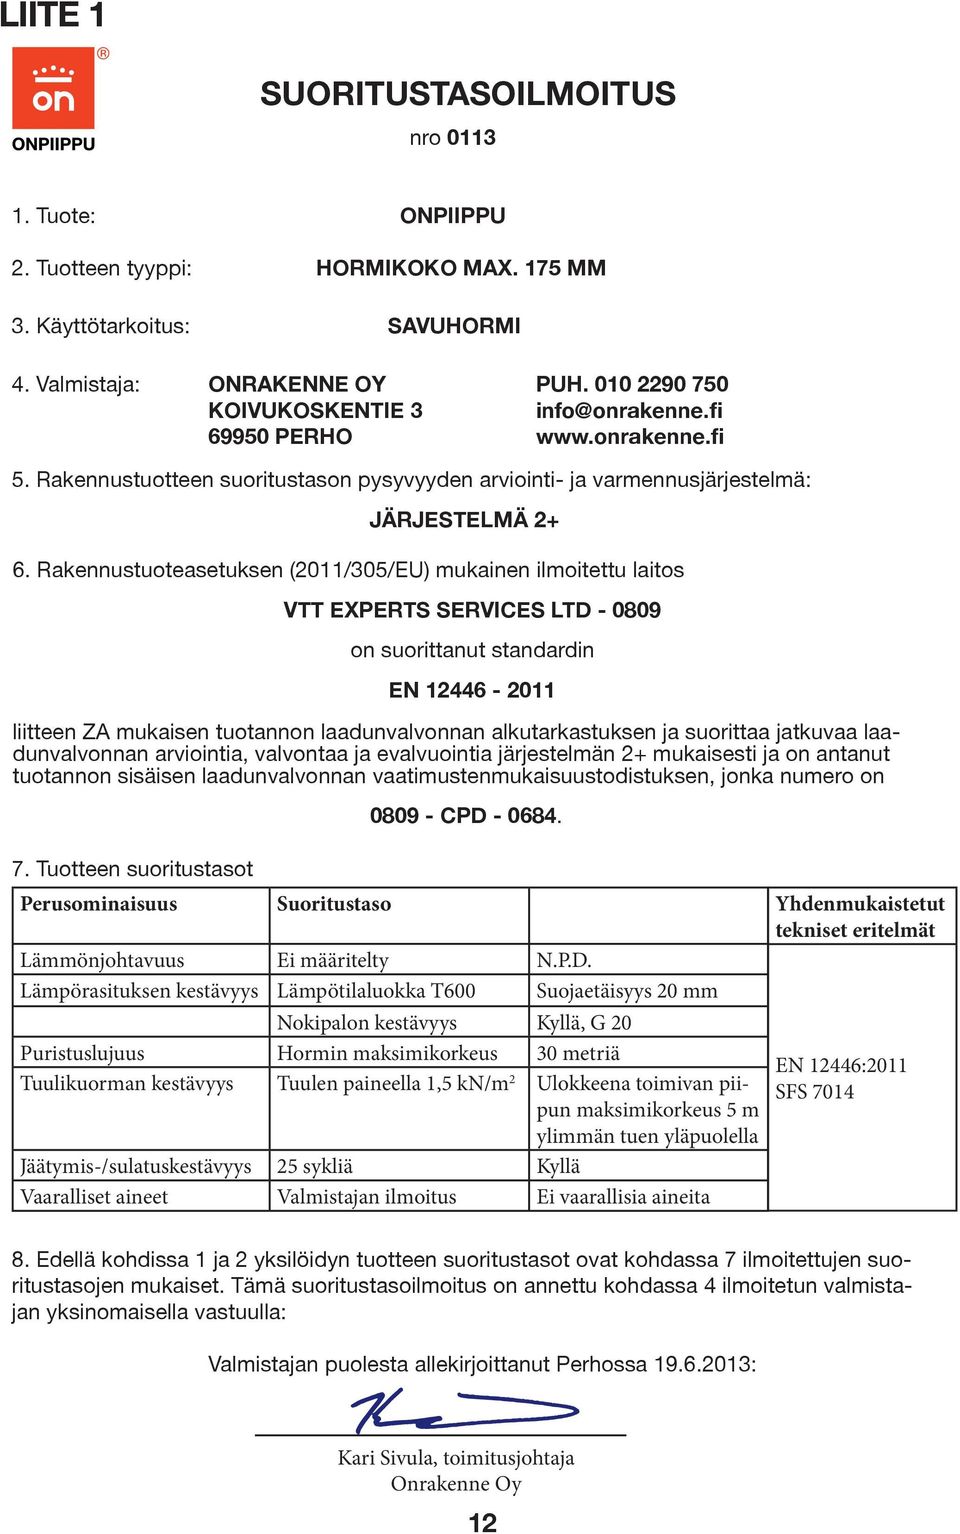 Rakennustuoteasetuksen (2011/305/EU) mukainen ilmoitettu laitos VTT EXPERTS SERVICES LTD - 0809 on suorittanut standardin EN 12446-2011 liitteen ZA mukaisen tuotannon laadunvalvonnan alkutarkastuksen